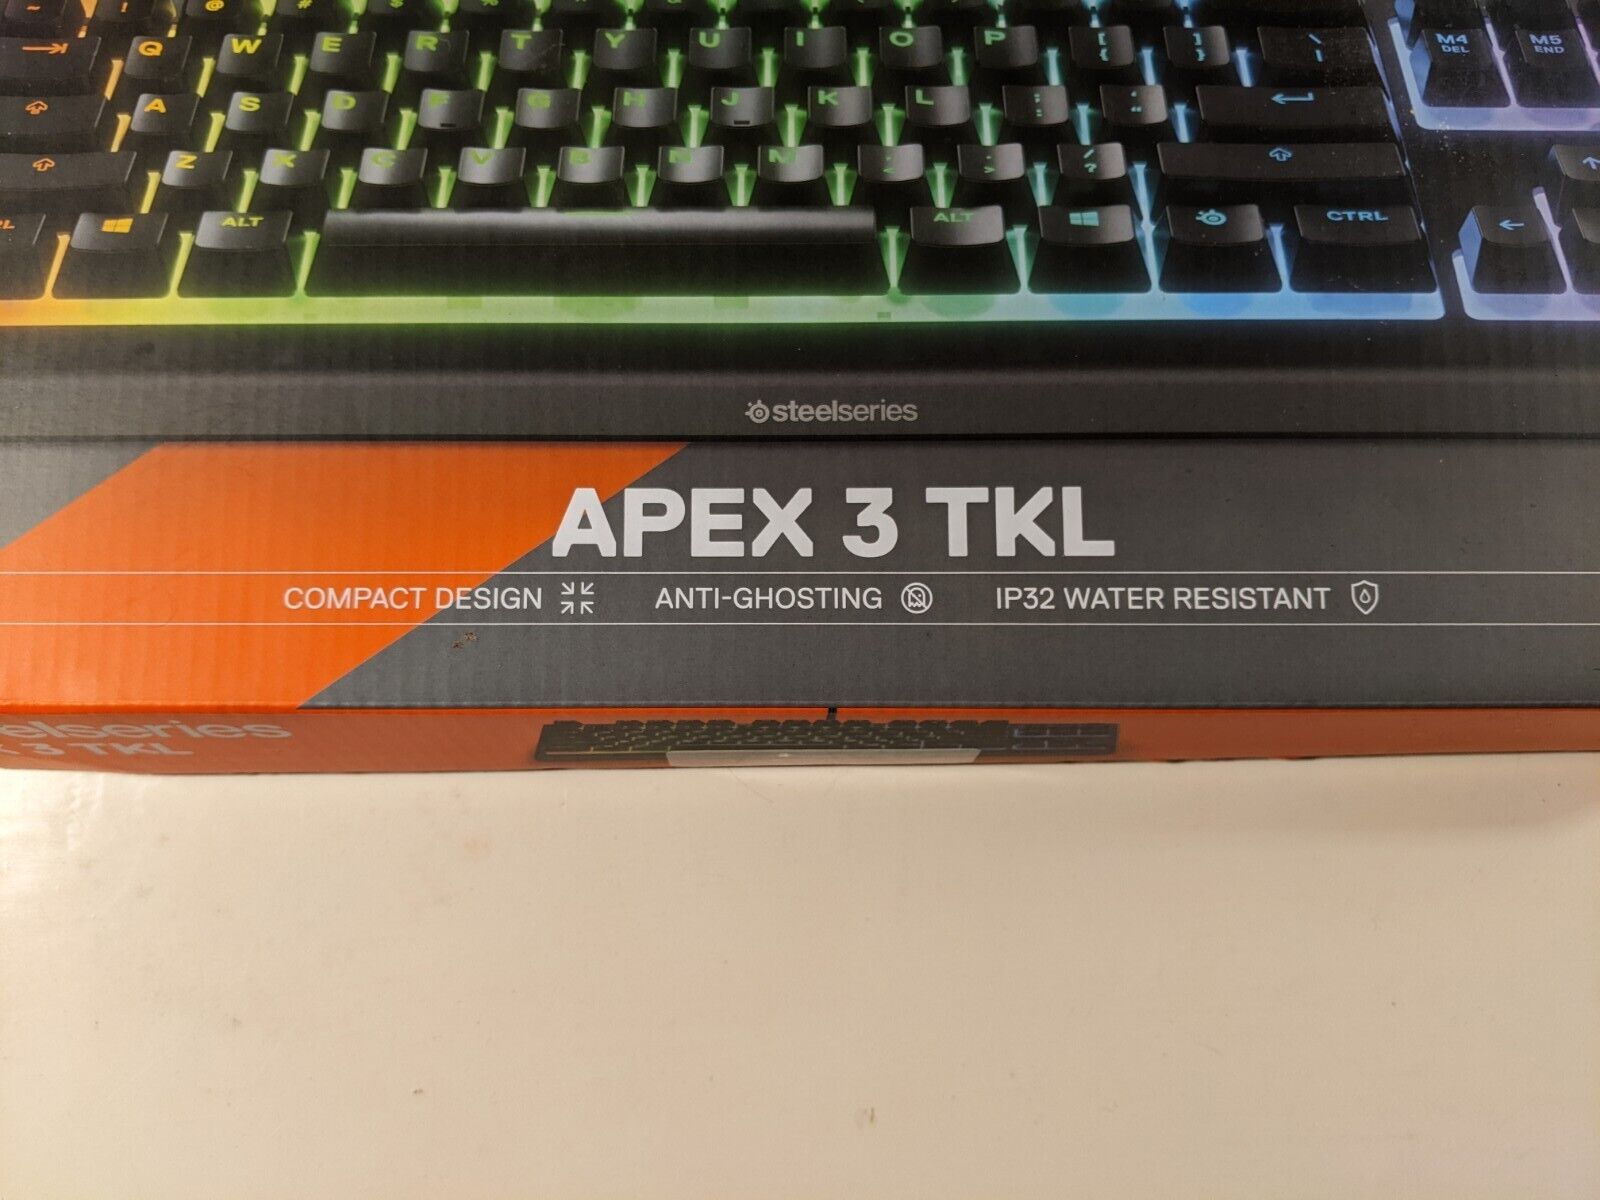 SteelSeries Apex 3 TKL RGB Gaming Keyboard Whisper Quiet & Water Resistant